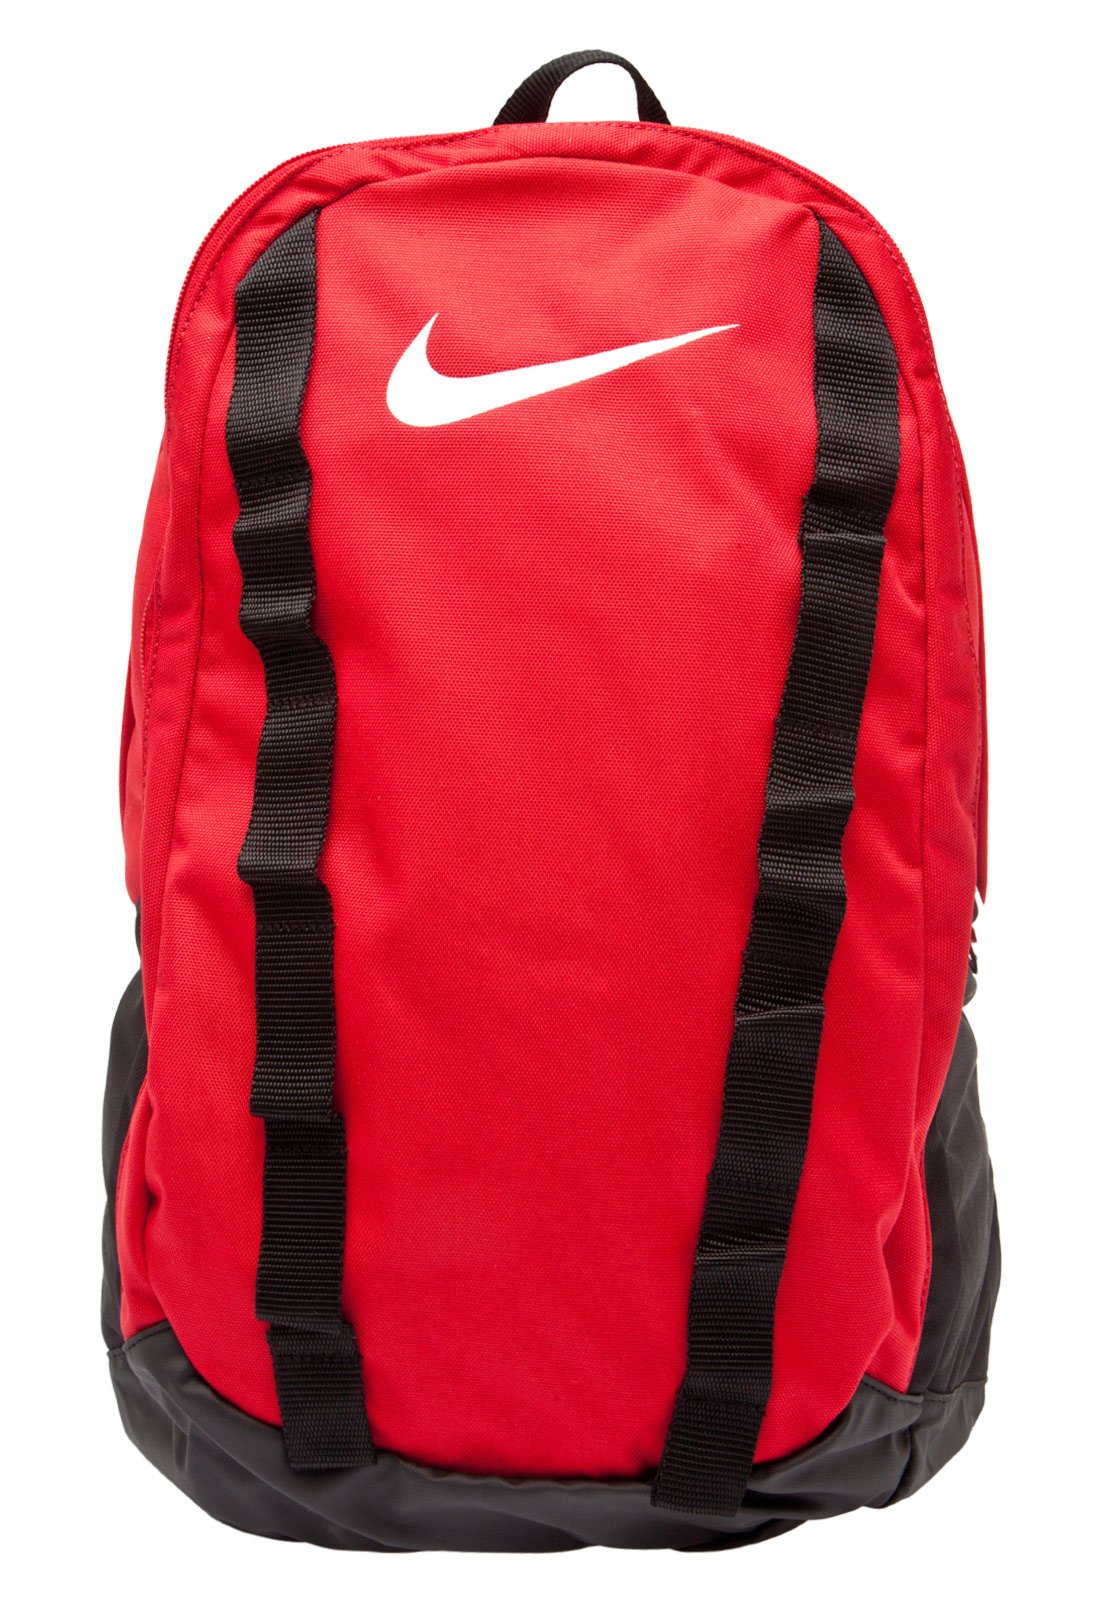 Mochila Nike Brasilia 7 Medium Vermelho - Compre Agora